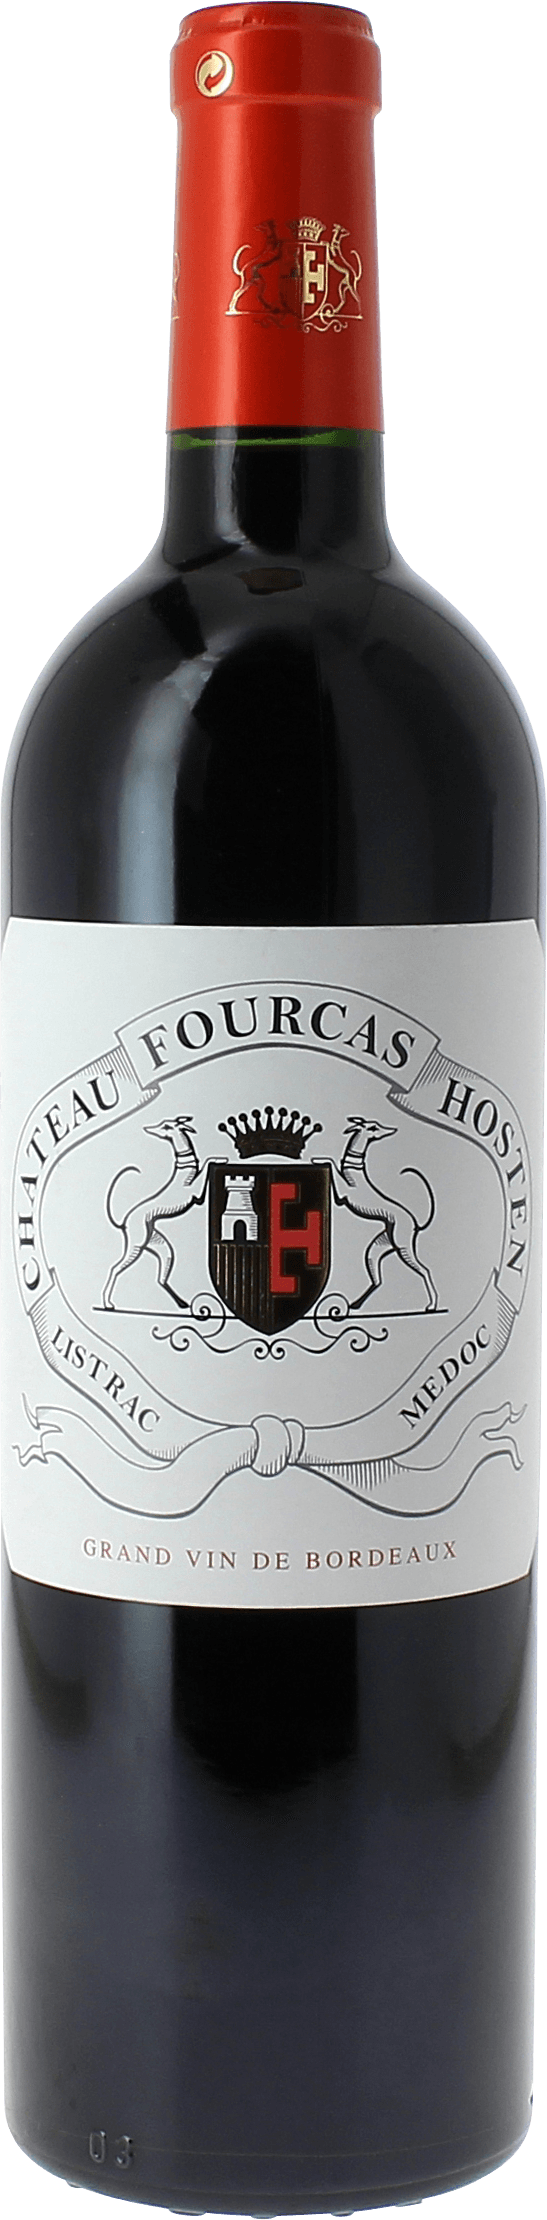 Fourcas hosten 2016  Listrac Mdoc, Slection Bordeaux Rouge